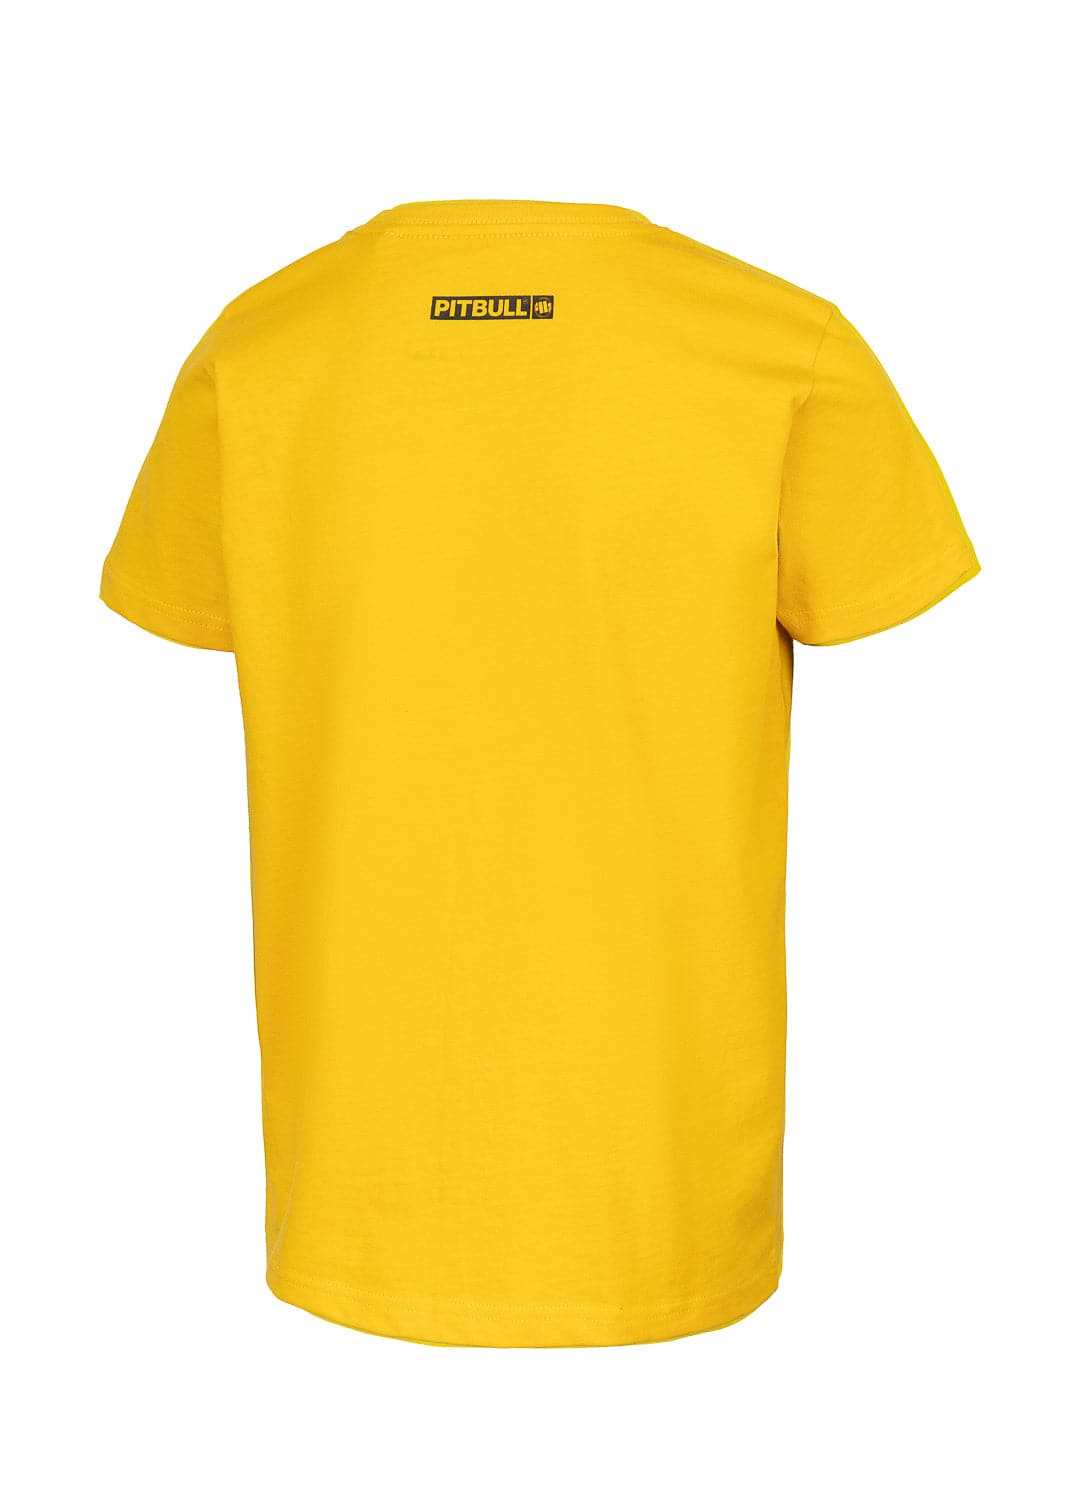 HILLTOP kids yellow t-shirt.